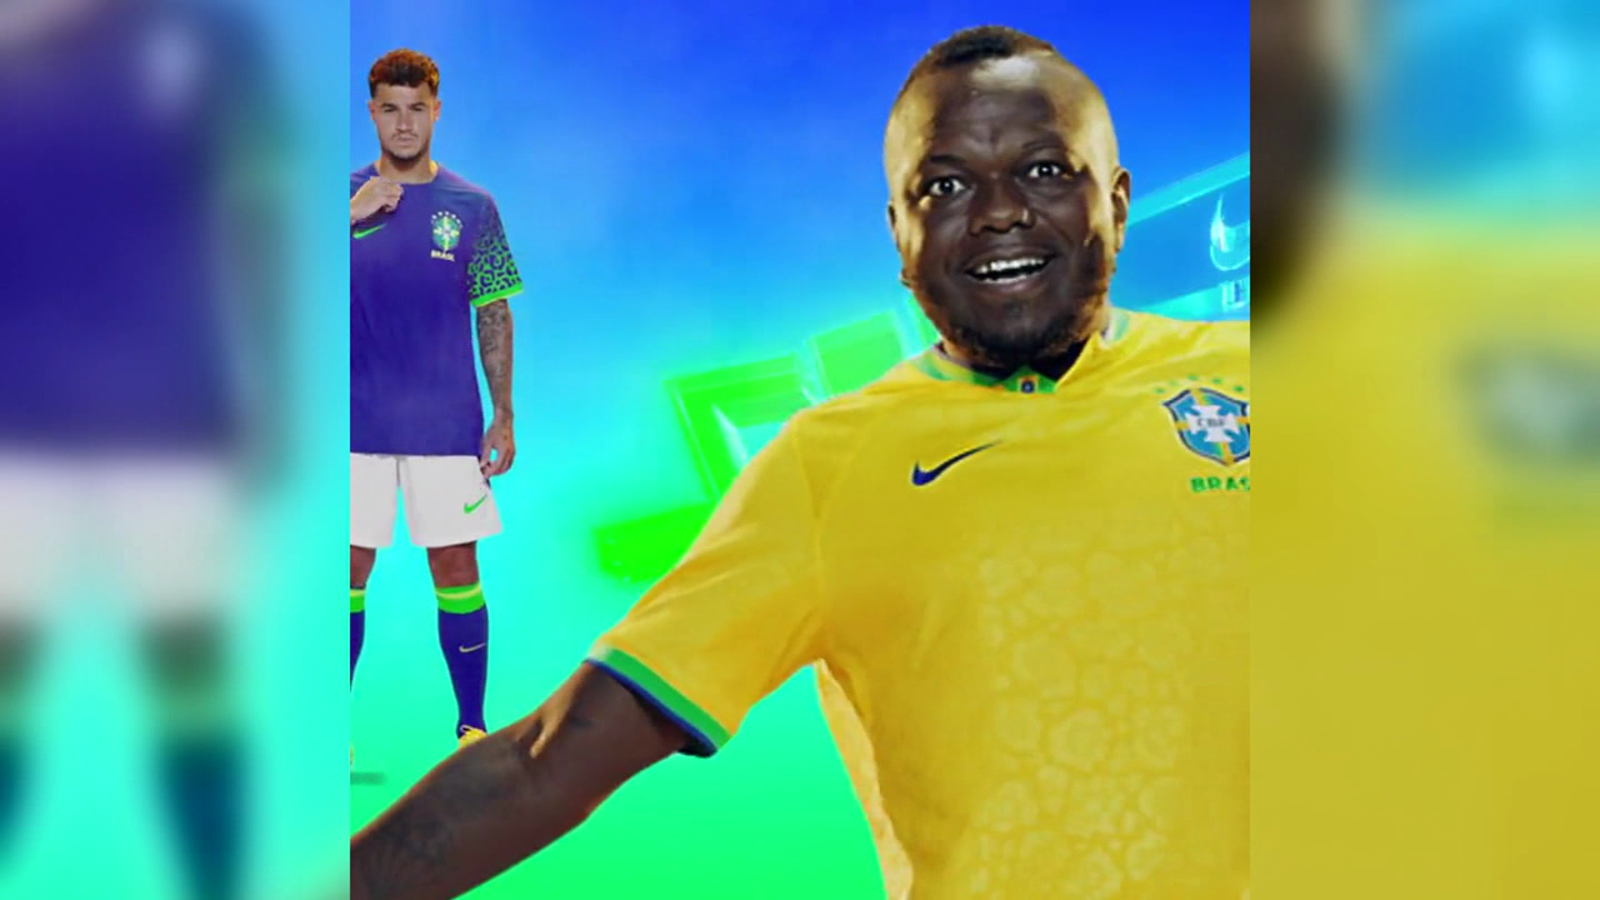 Brasil – Camisetas de Fútbol